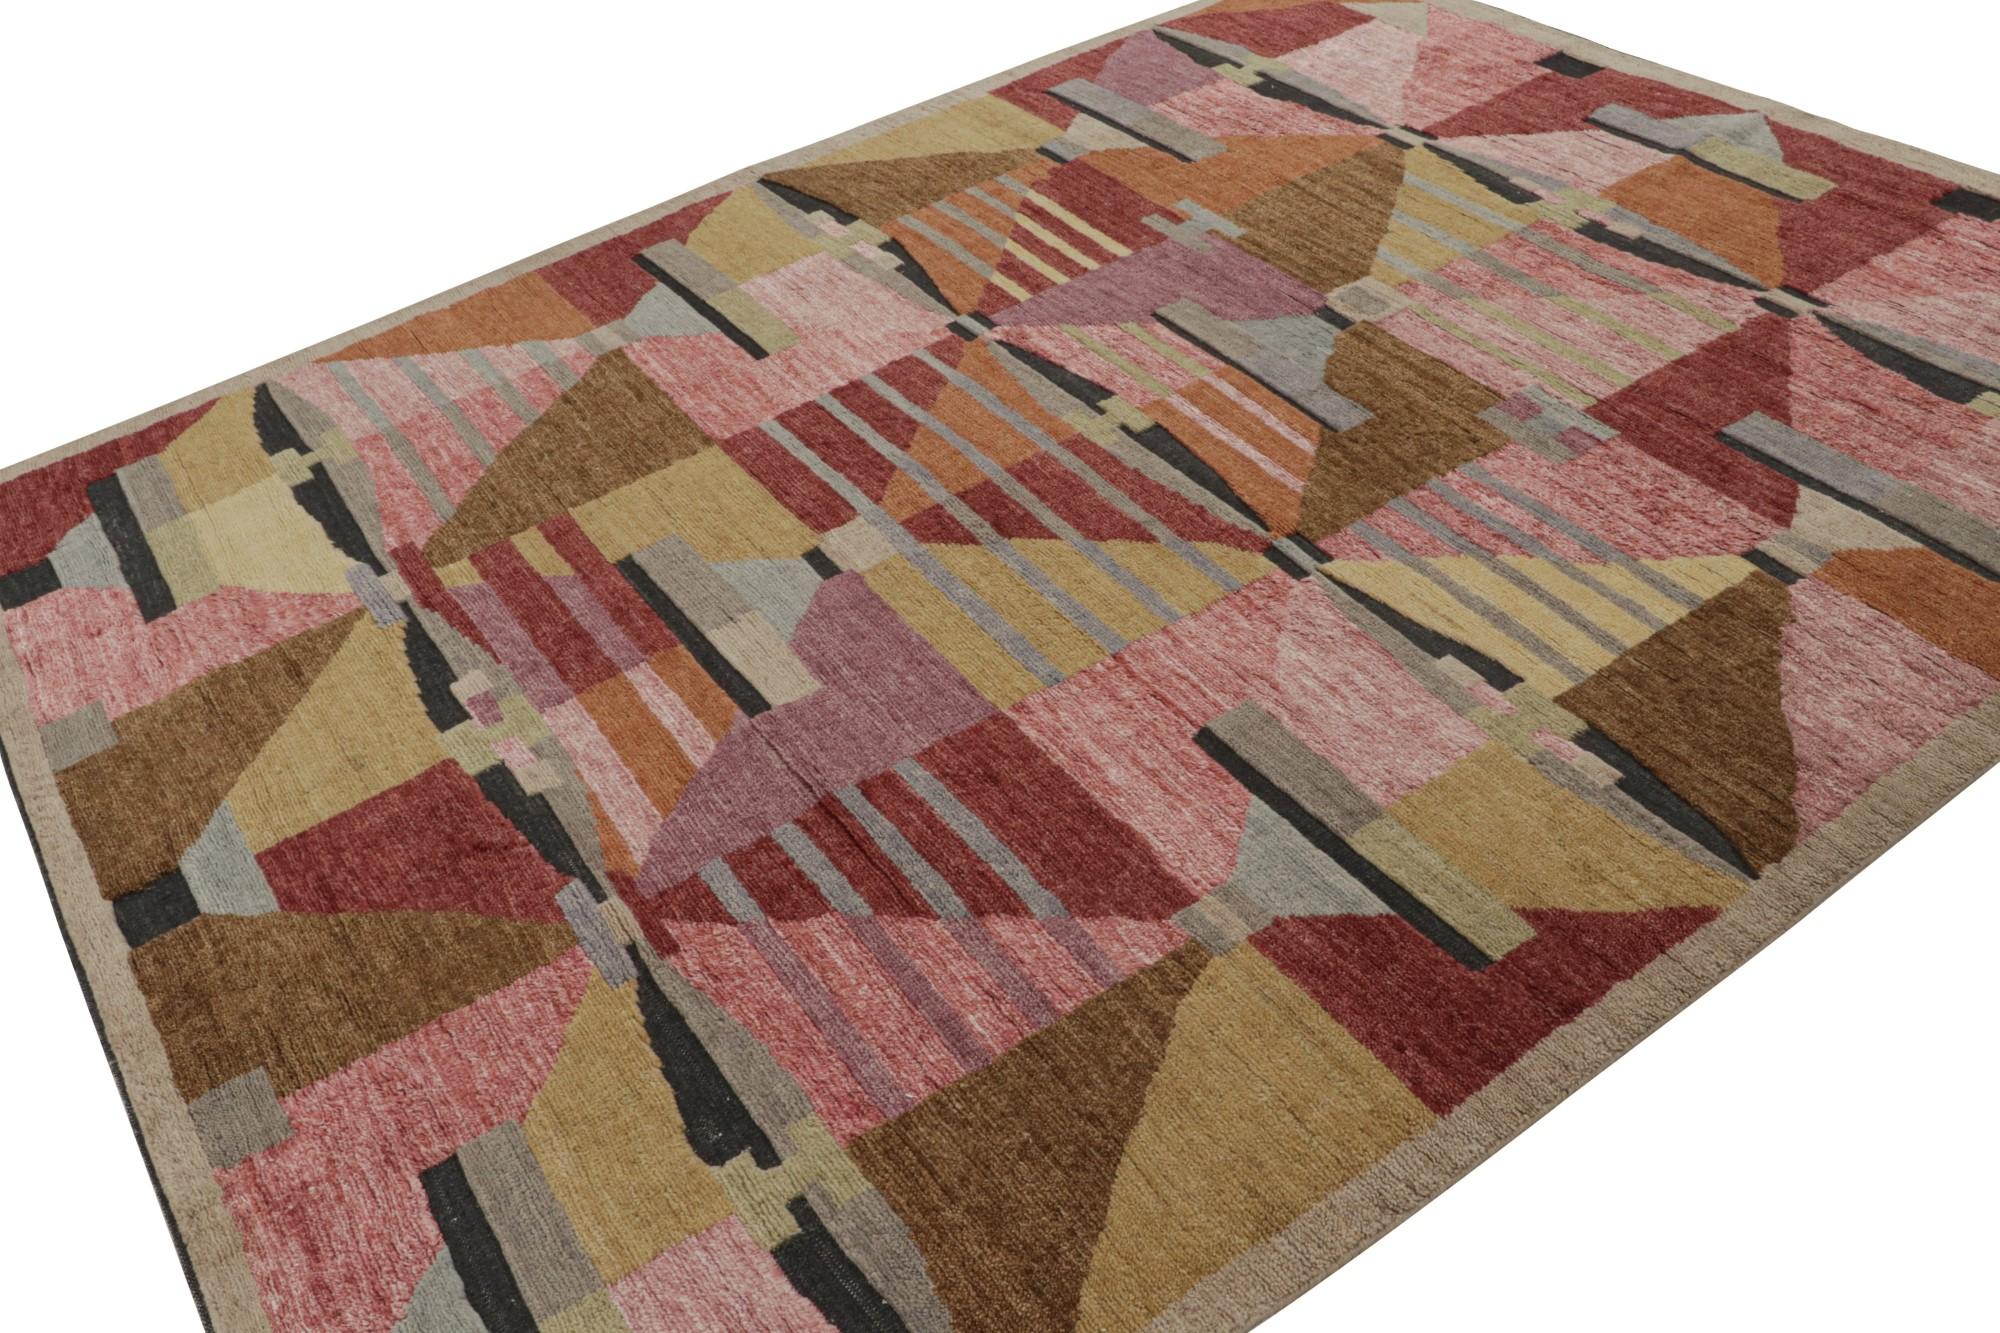 Dieses Teppichdesign repräsentiert die Scandinavian Collection'S von Rug & Kilim - eine moderne Interpretation des schwedischen Deco-Stils der Rollakan- und Rya-Teppiche. 

Über das Design:

Diese Fotos zeigen einen 8x10 Teppich in diesem Design,